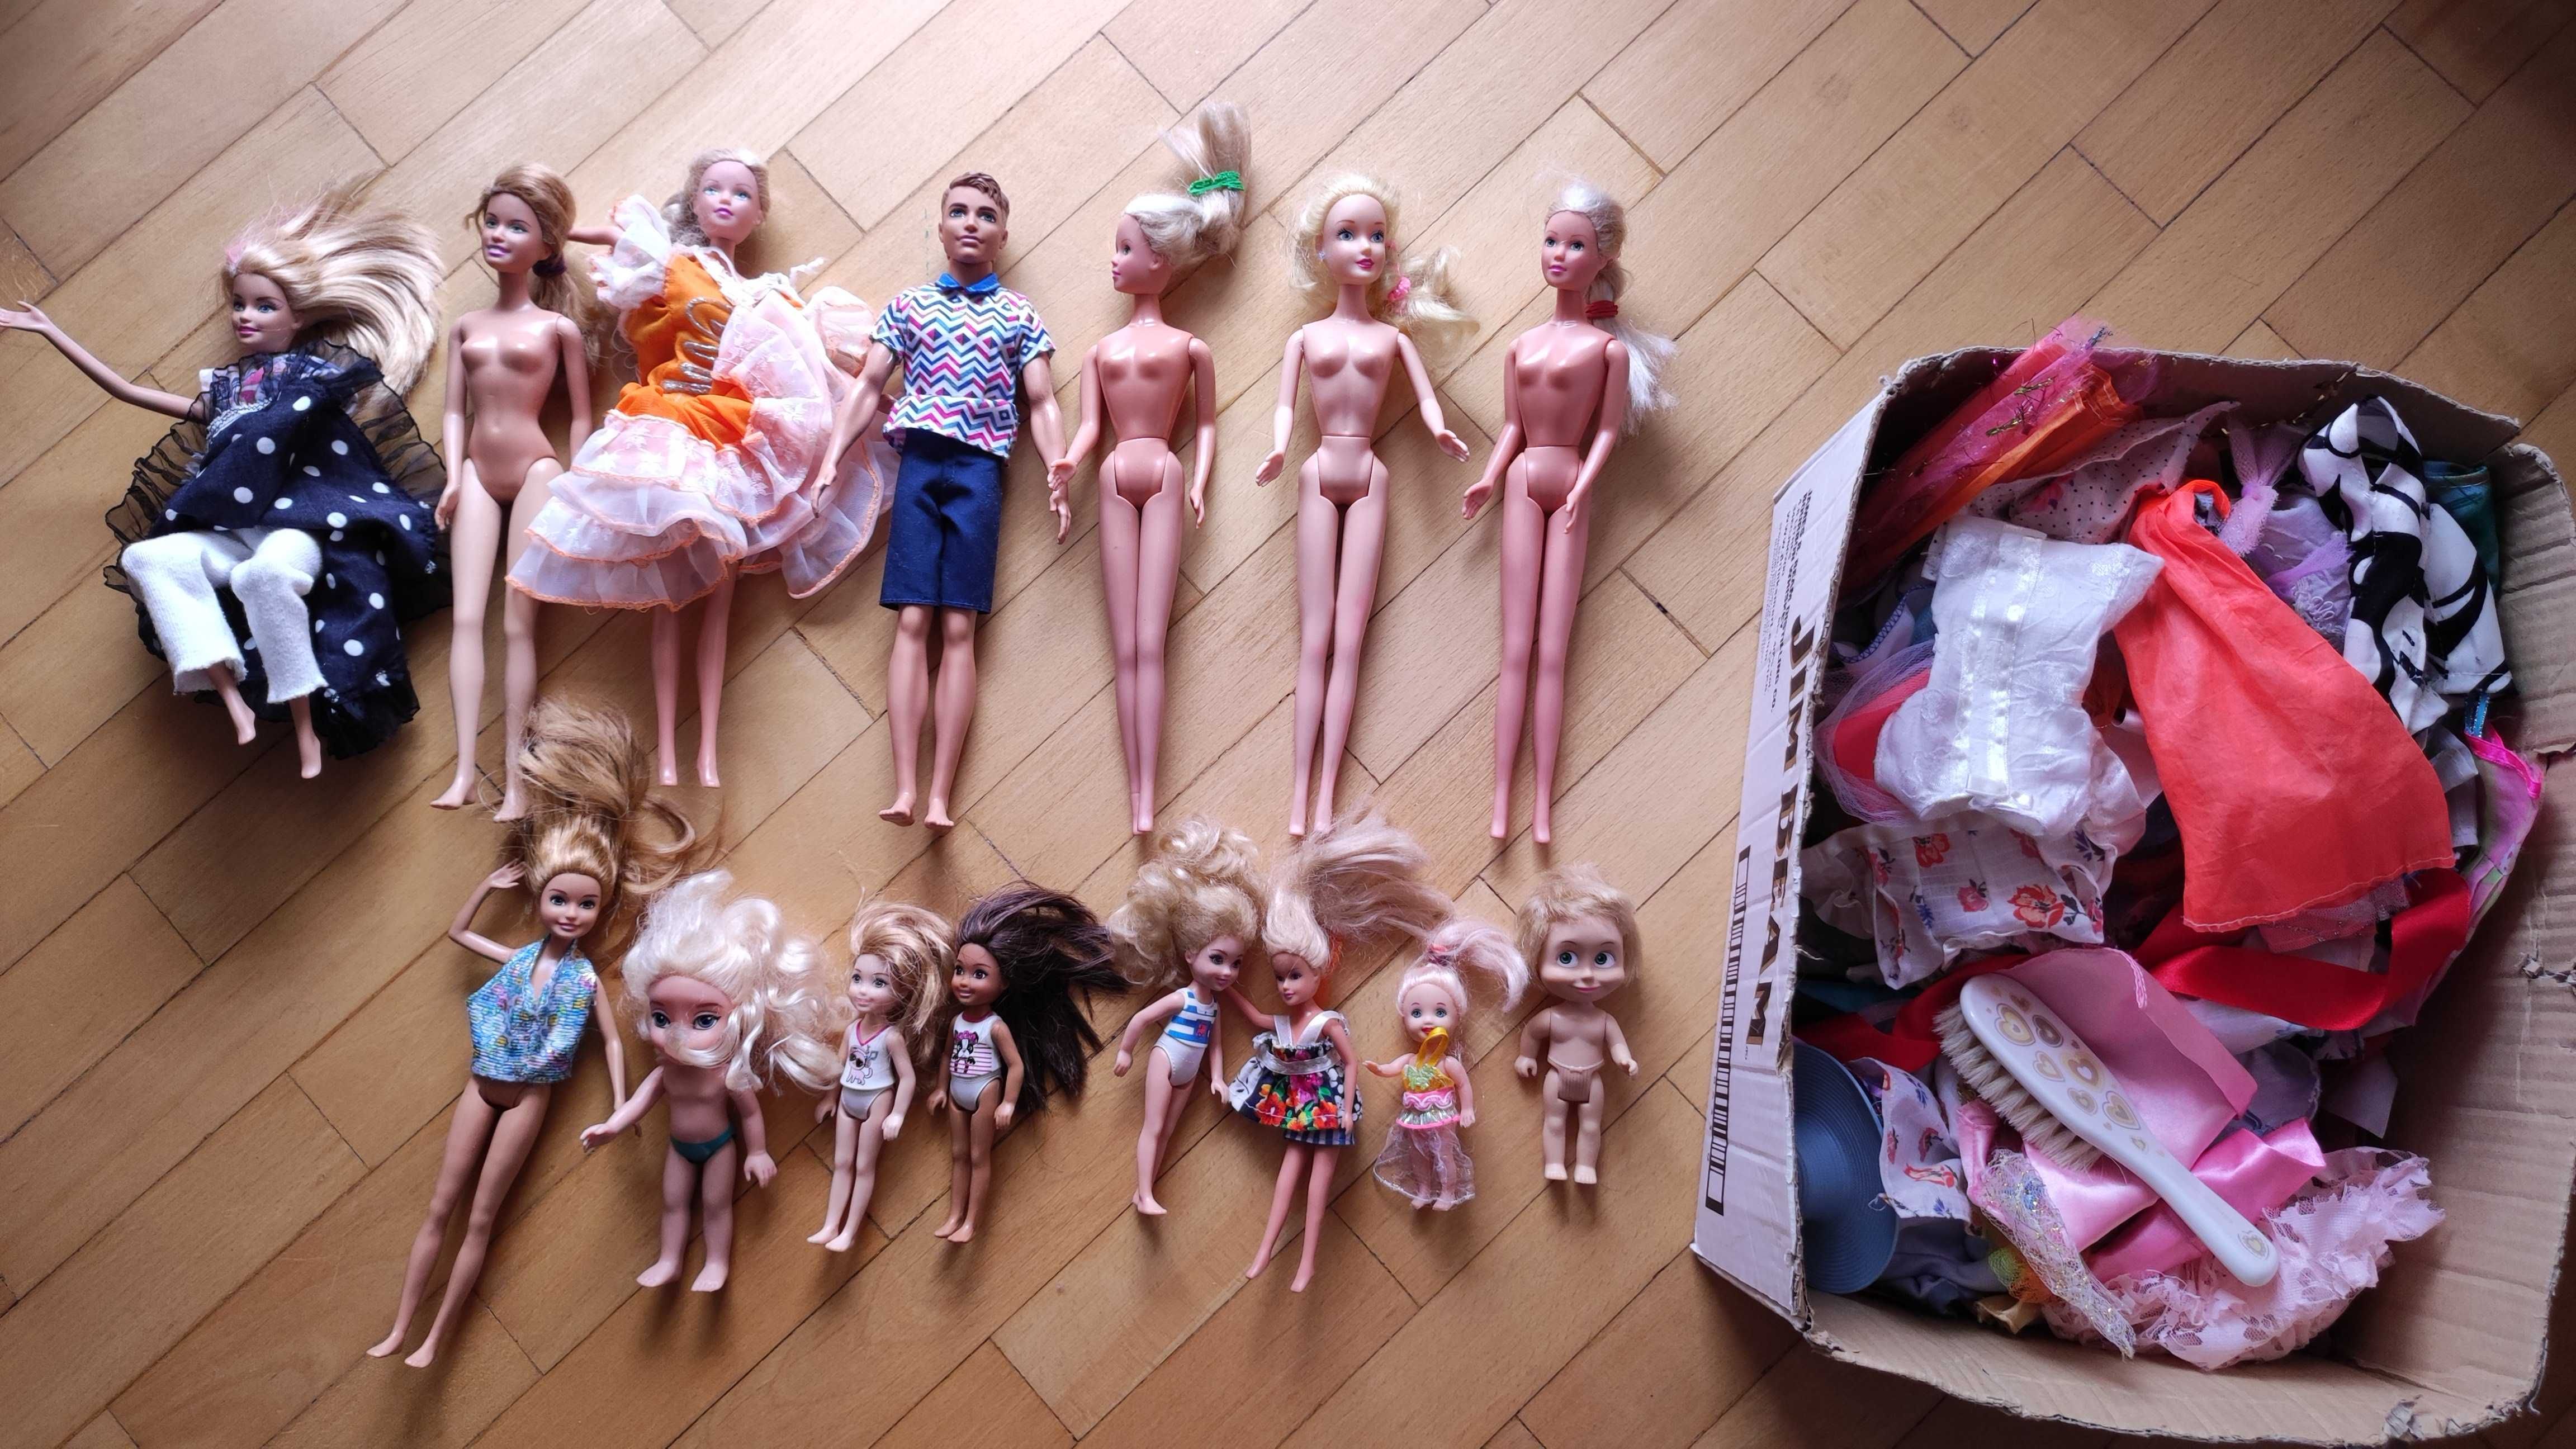 Zestaw lalki Barbie 9 duże +14 małe + dużo ubrań